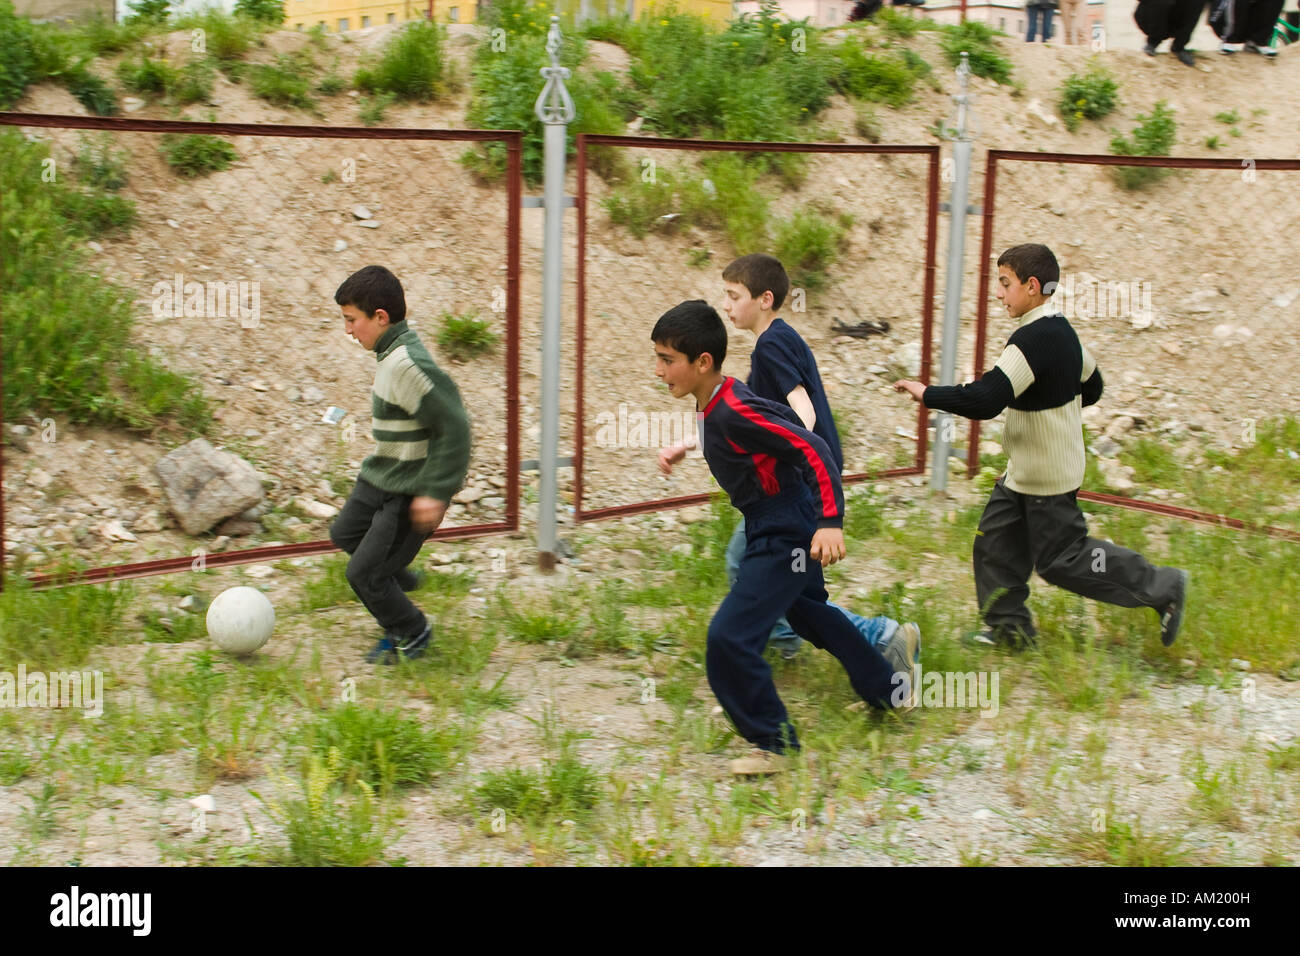 L'ARMÉNIE Vanadzor quatre garçons d'âge scolaire jouer au soccer à l'extérieur dans une aire de jeux clôturée de mauvaises herbes s'exécuter après ball dans le groupe Banque D'Images